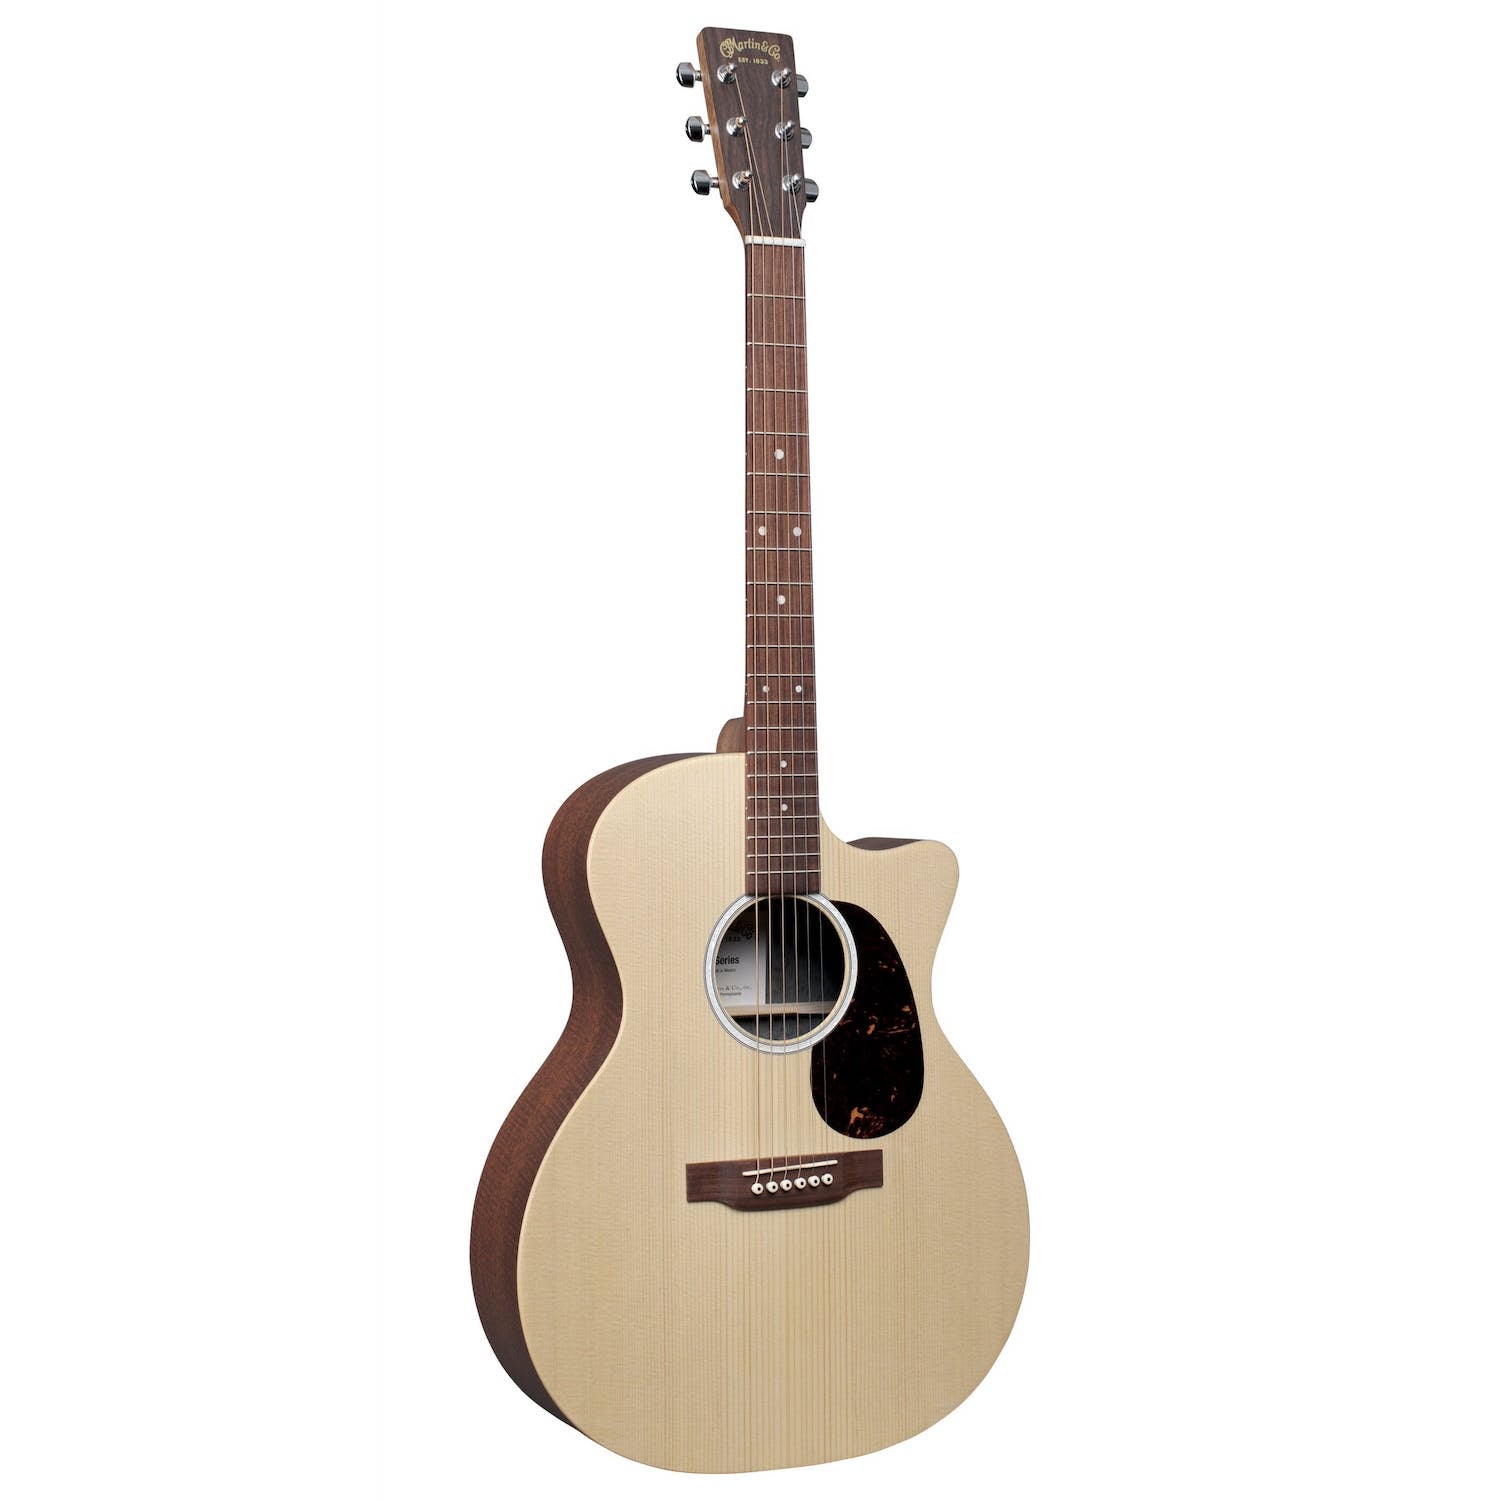 Martin GPCX2E Acoustic Guitar w/Bag